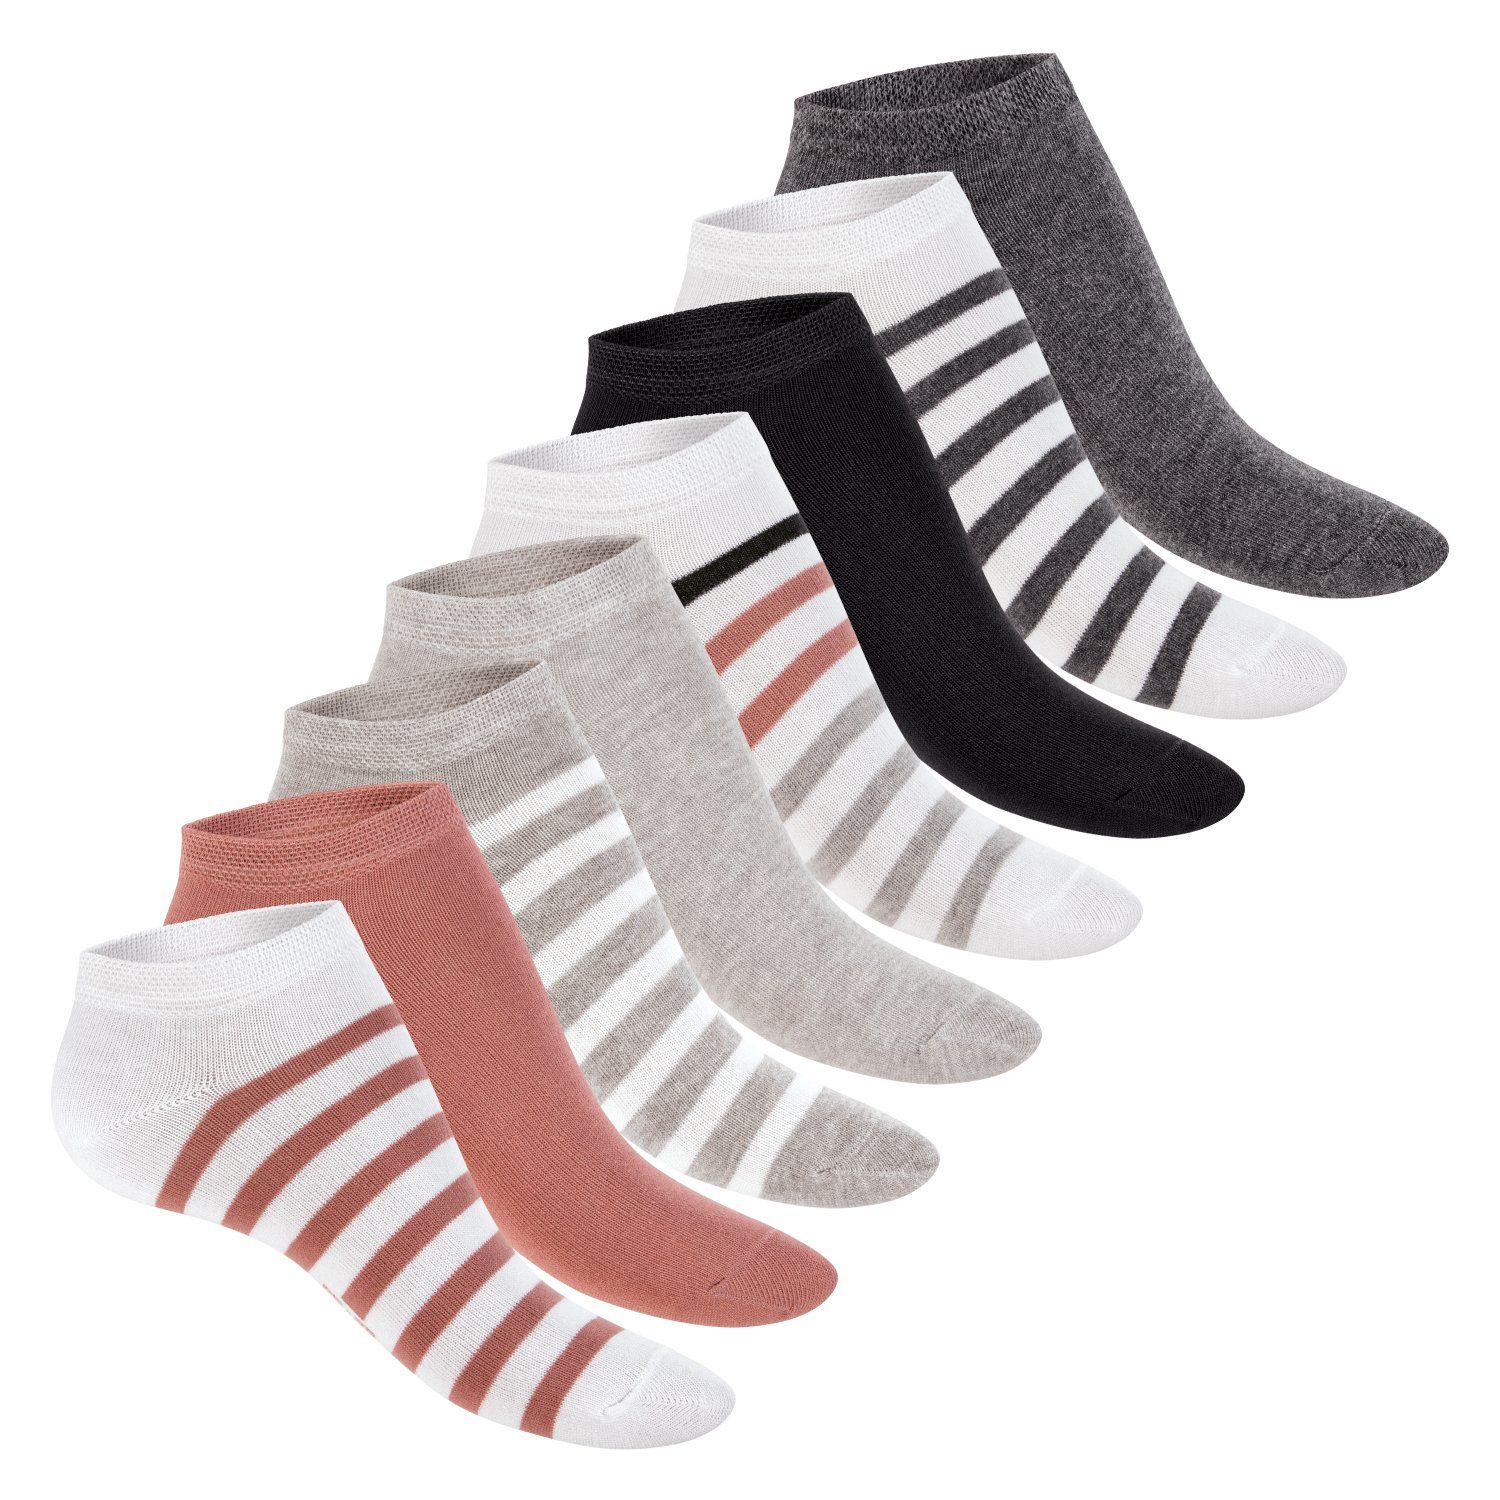 Footstar Sneakersocken süße Damen Sneaker Socken (8 Paar) Kurze Söckchen mit Muster Weiss-Bunt / 8 Paar